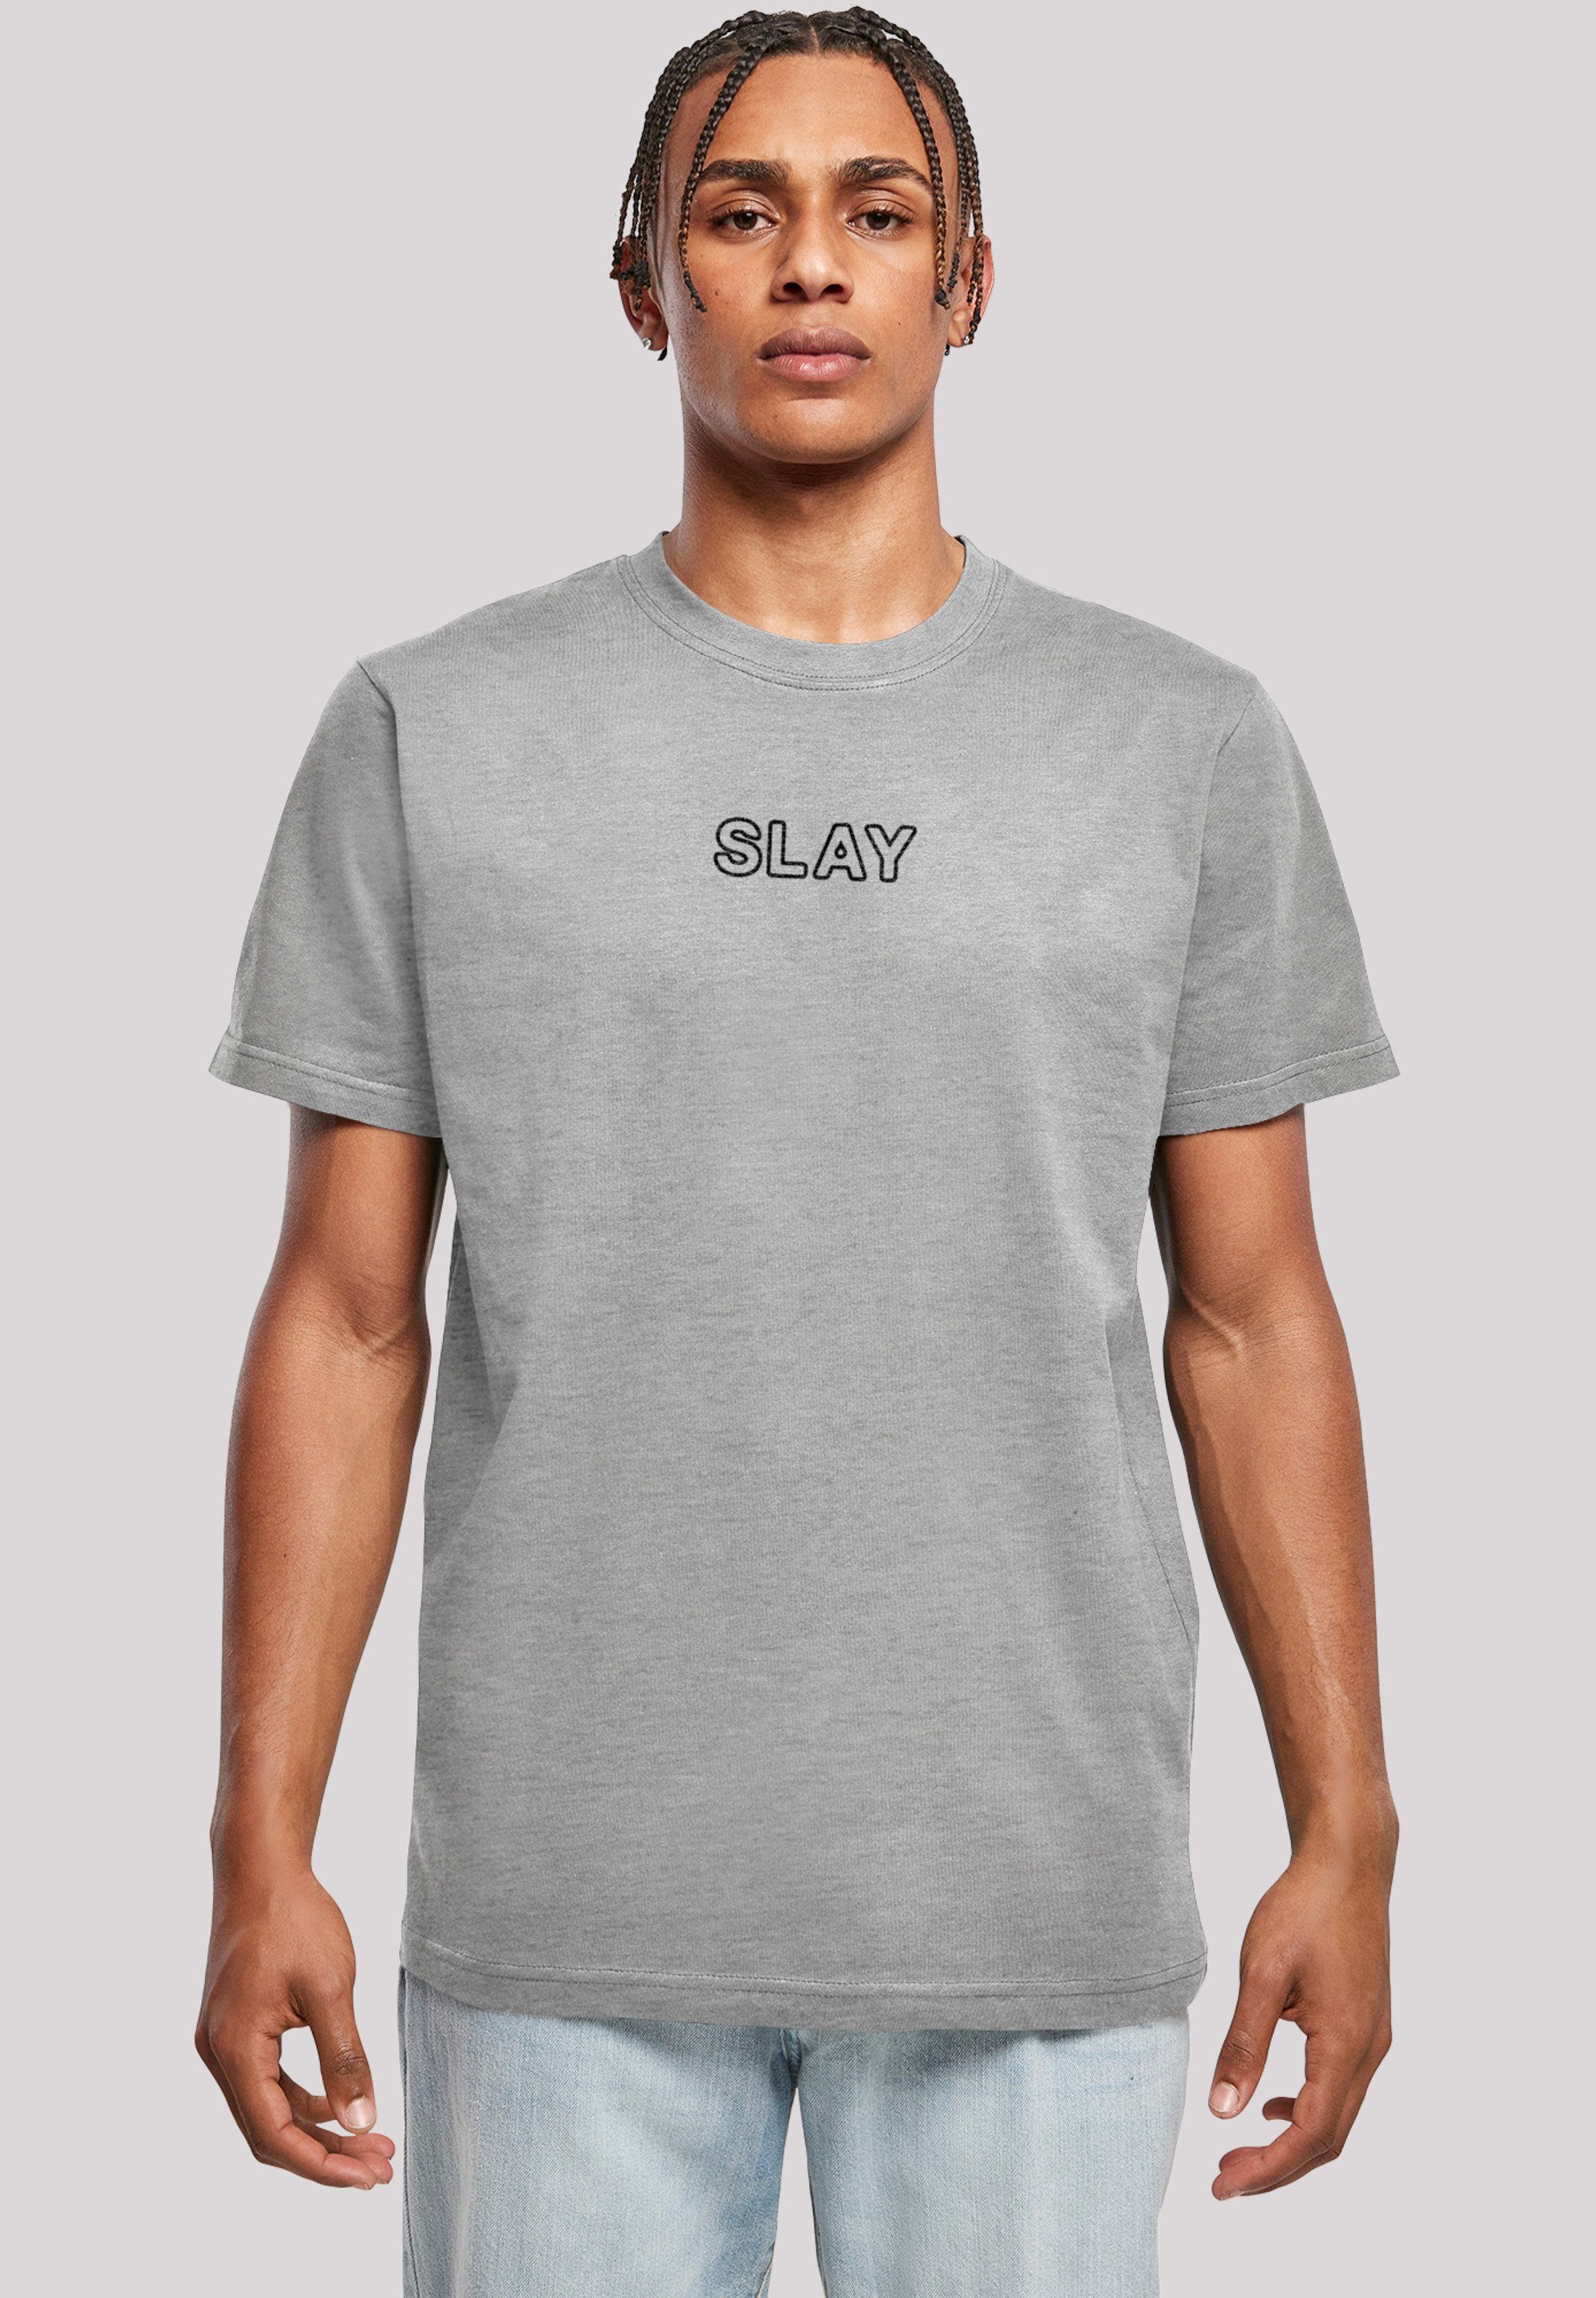 F4NT4STIC T-Shirt 2022, Slay slang Jugendwort